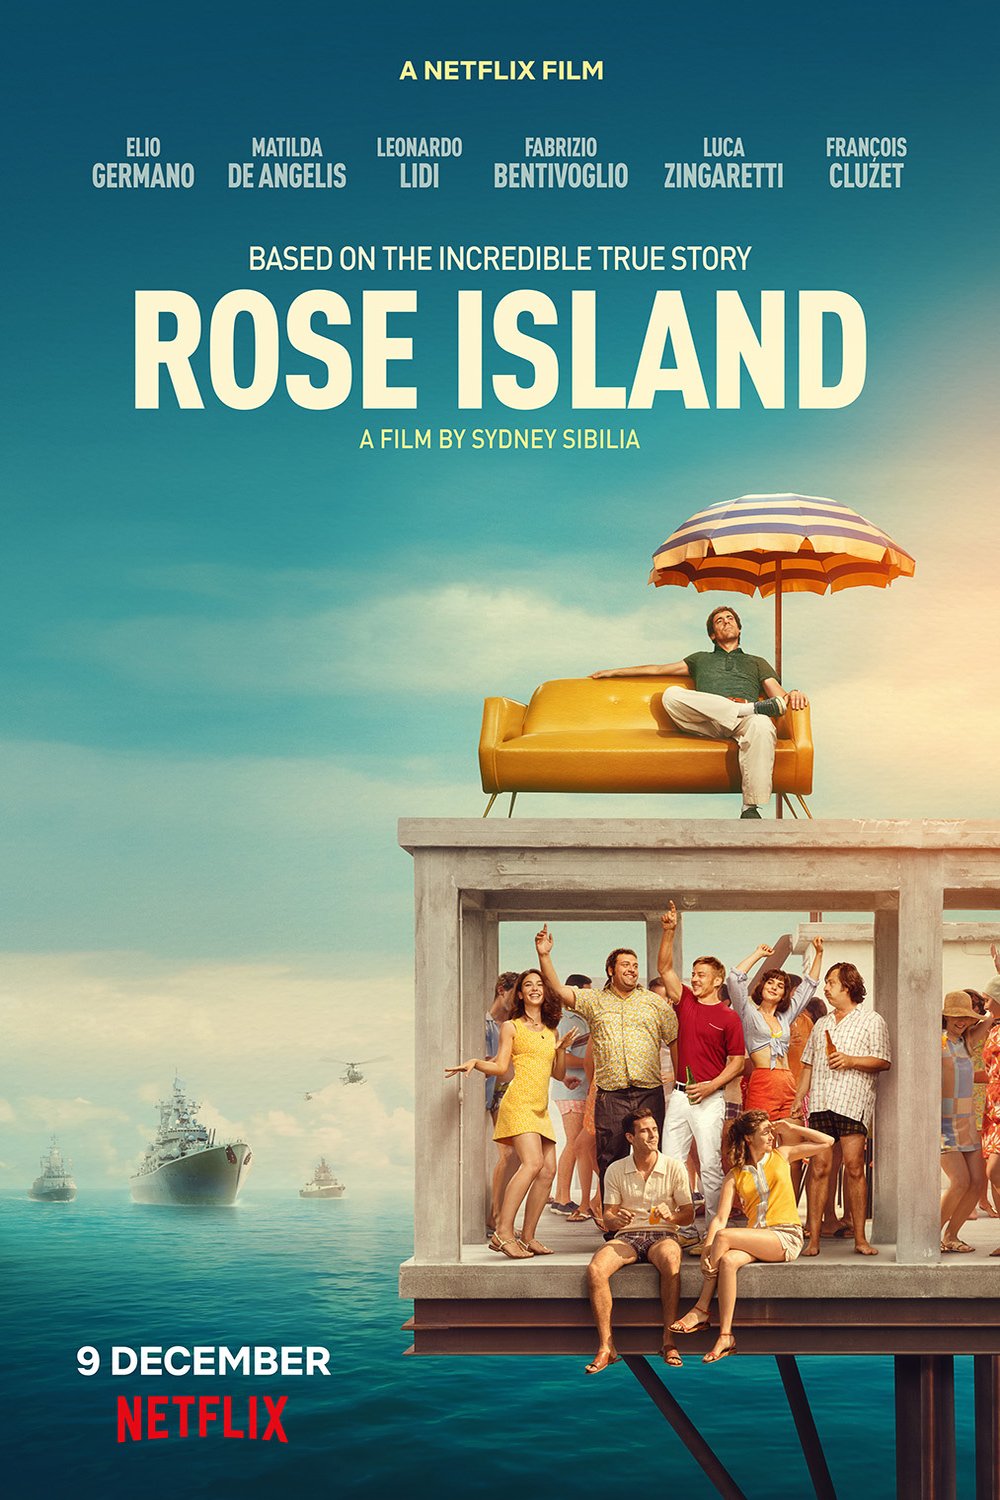 Poster of the movie L'incredibile storia dell'isola delle rose